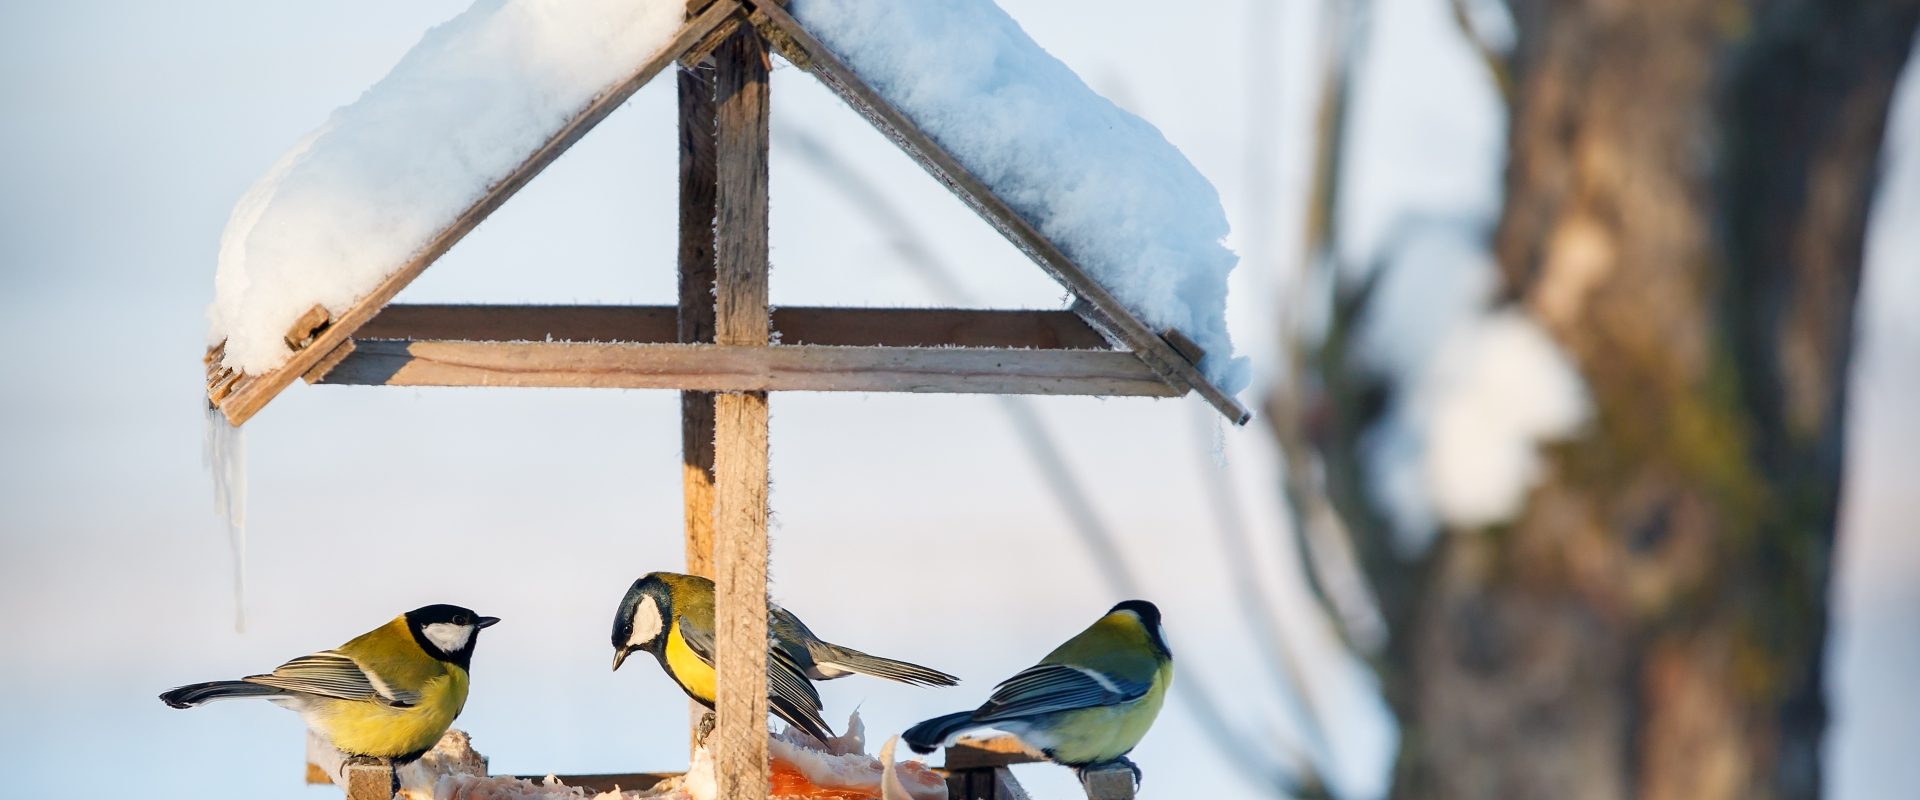 Jak dokarmiać ptaki zimą? Czym karmić ptaki? Co jedzą wróble, co sikorki, a co łabędzie i kaczki? Sikorki w ośnieżonym karmniku dla ptaków.